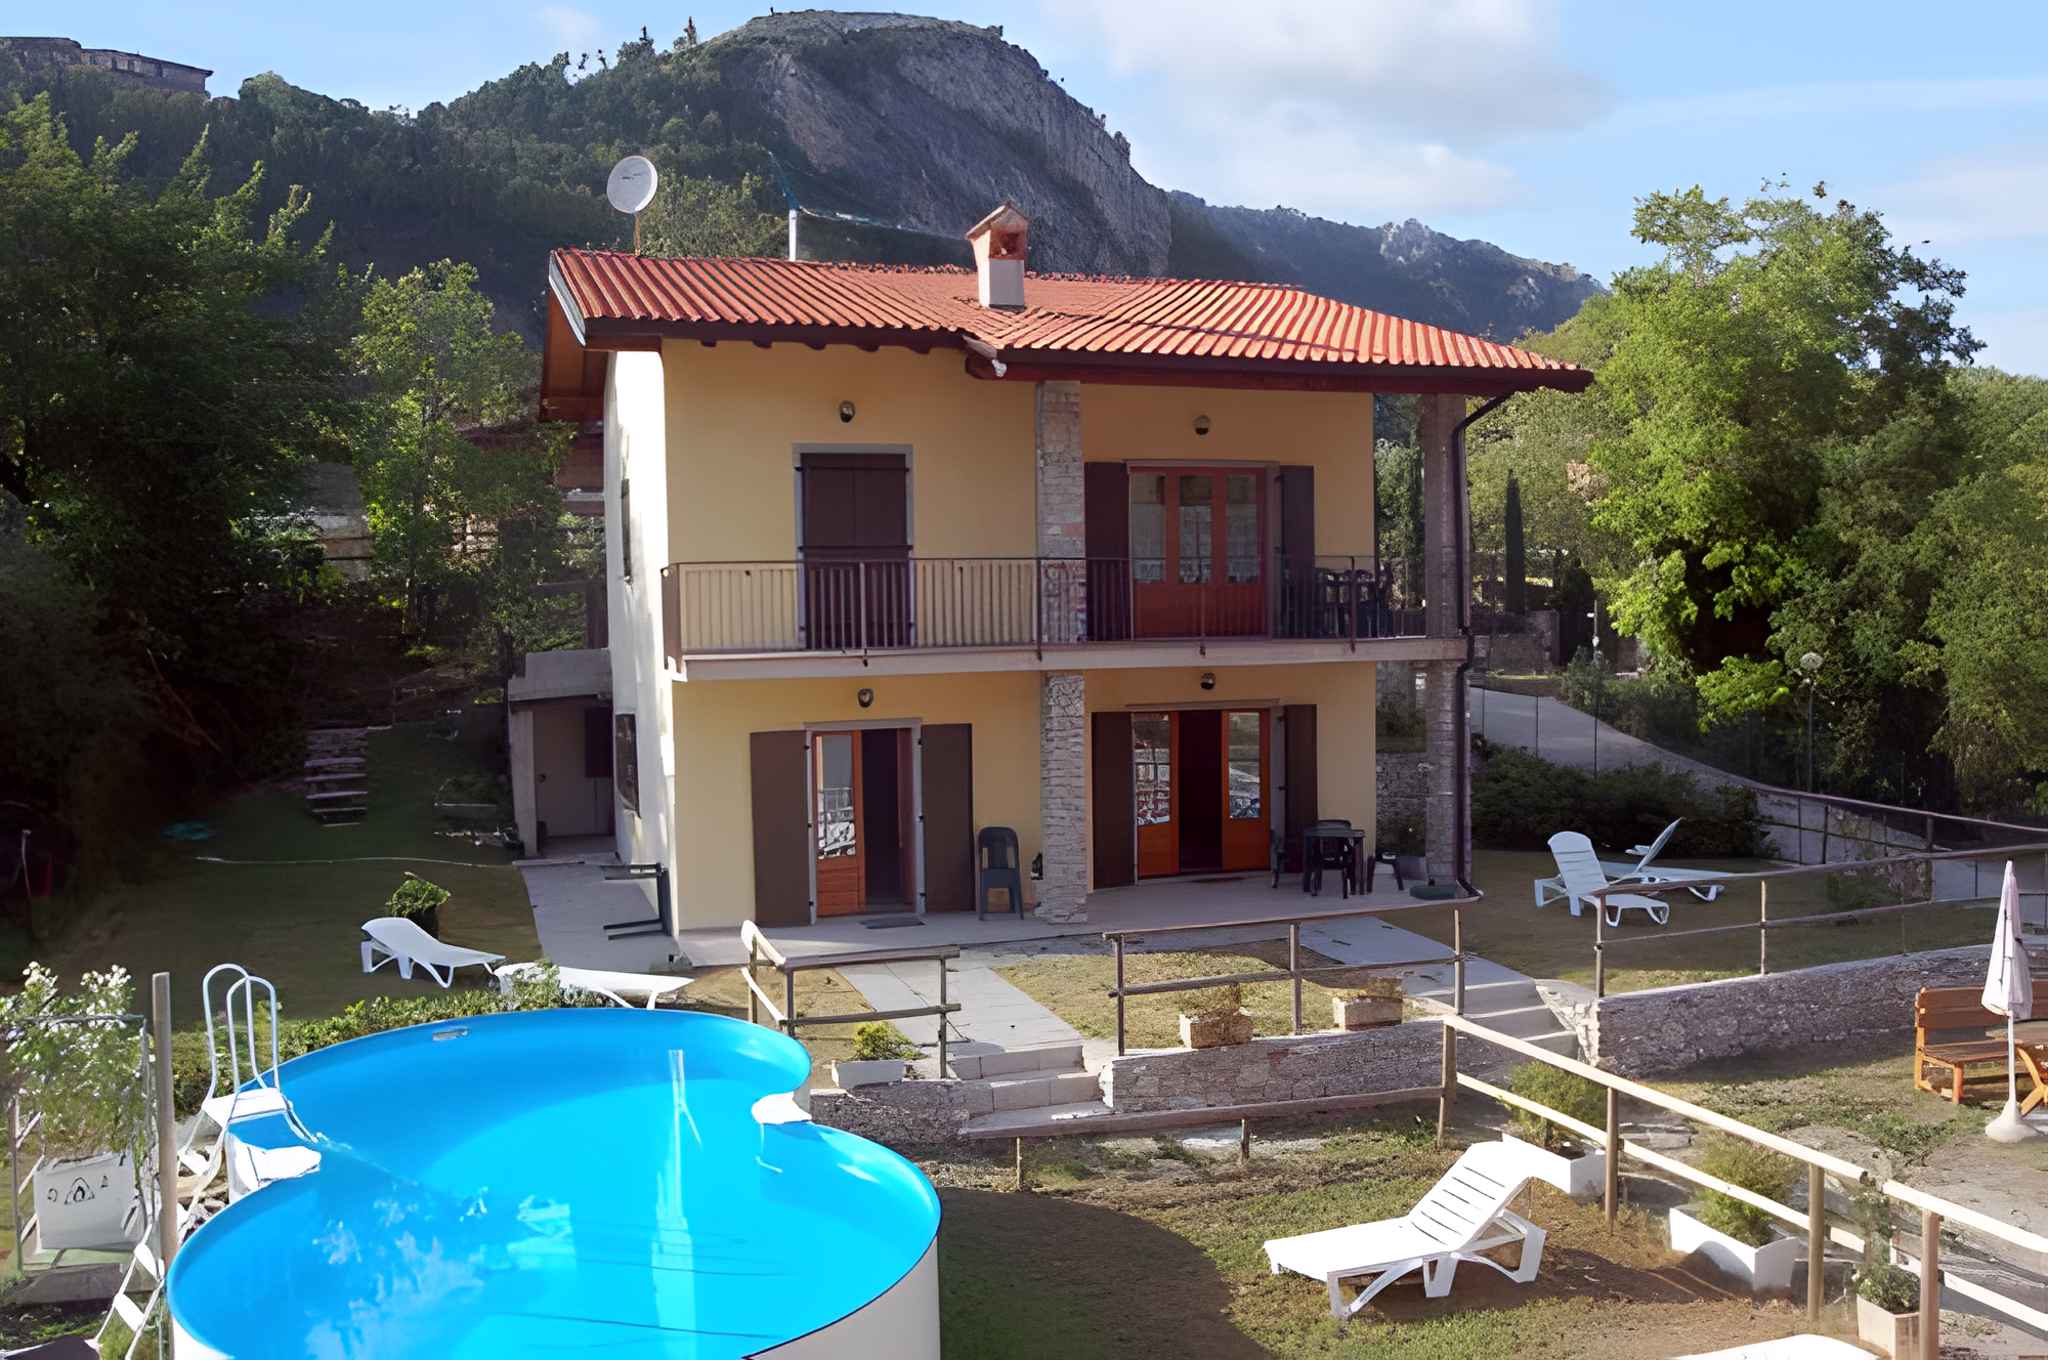 Ferienwohnung in der Ferienanlage Casa Susy   Gardasee - Lago di Garda